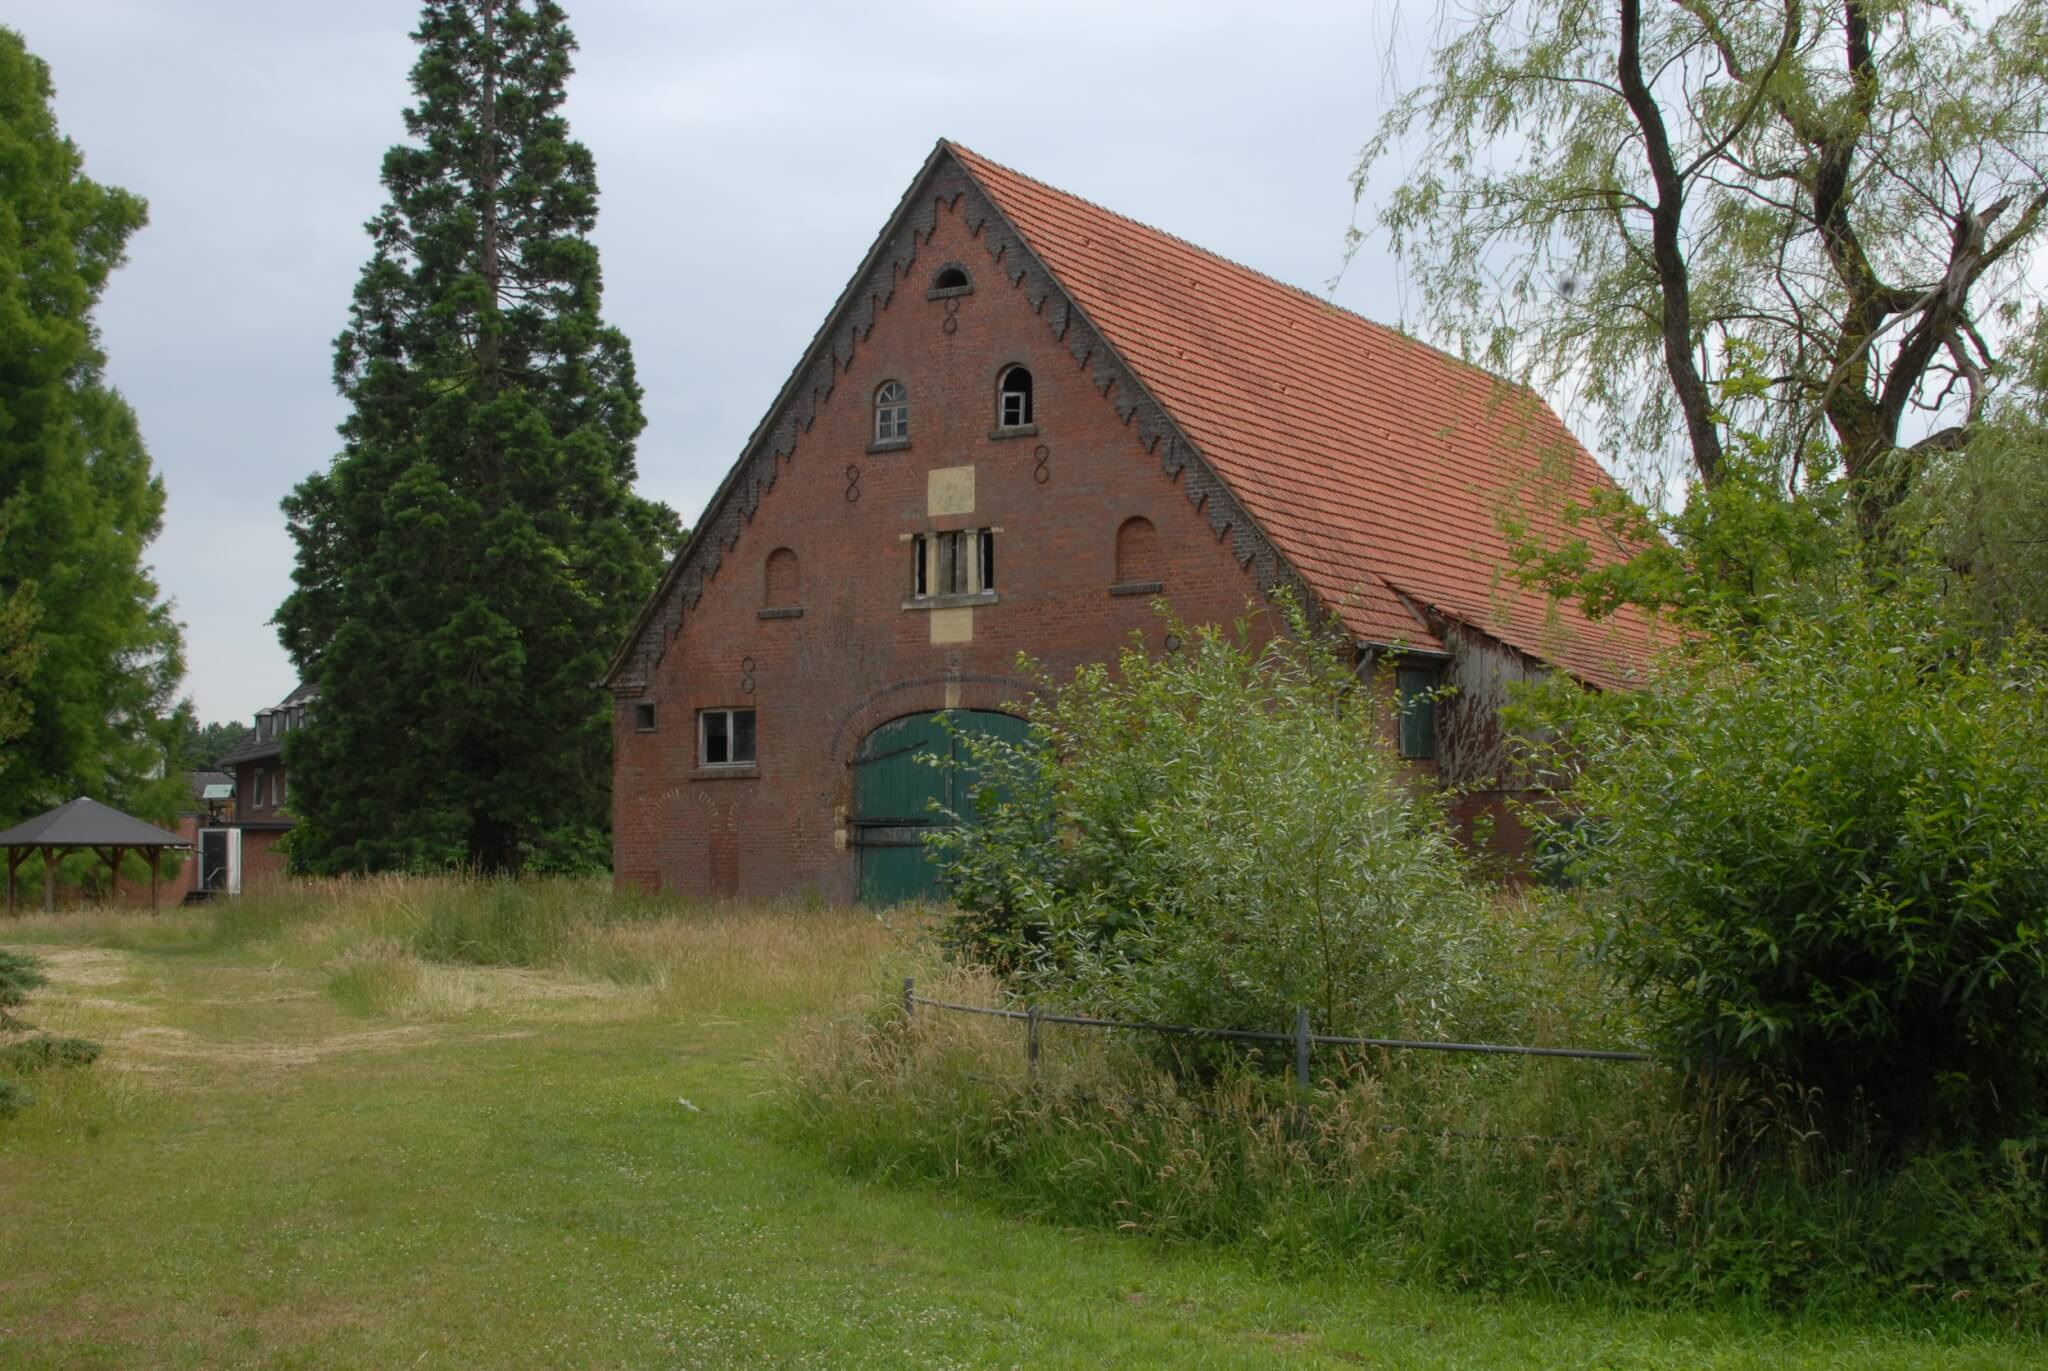 Die schiefe Scheune auf dem Gelände von Haus Heidhorn von vorne fotografiert.